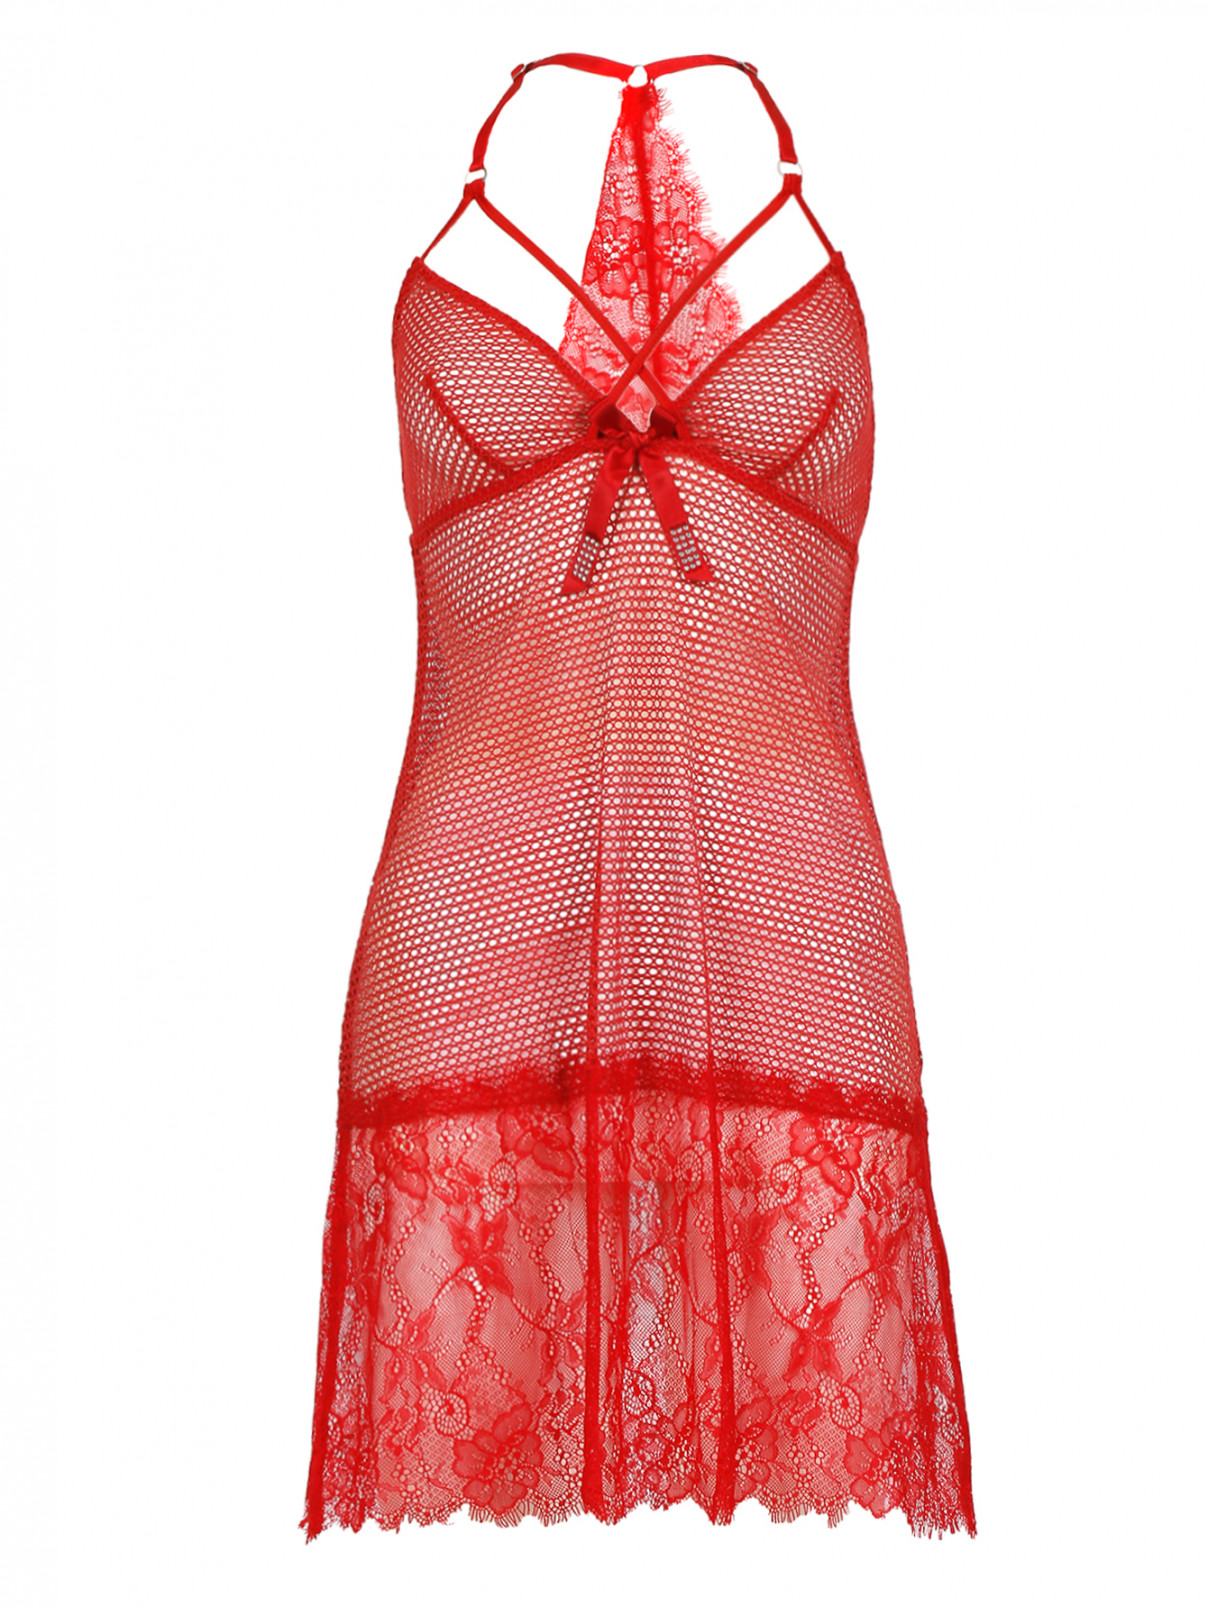 Прозрачная сорочка с декоративным бантом Rosapois  –  Общий вид  – Цвет:  Красный